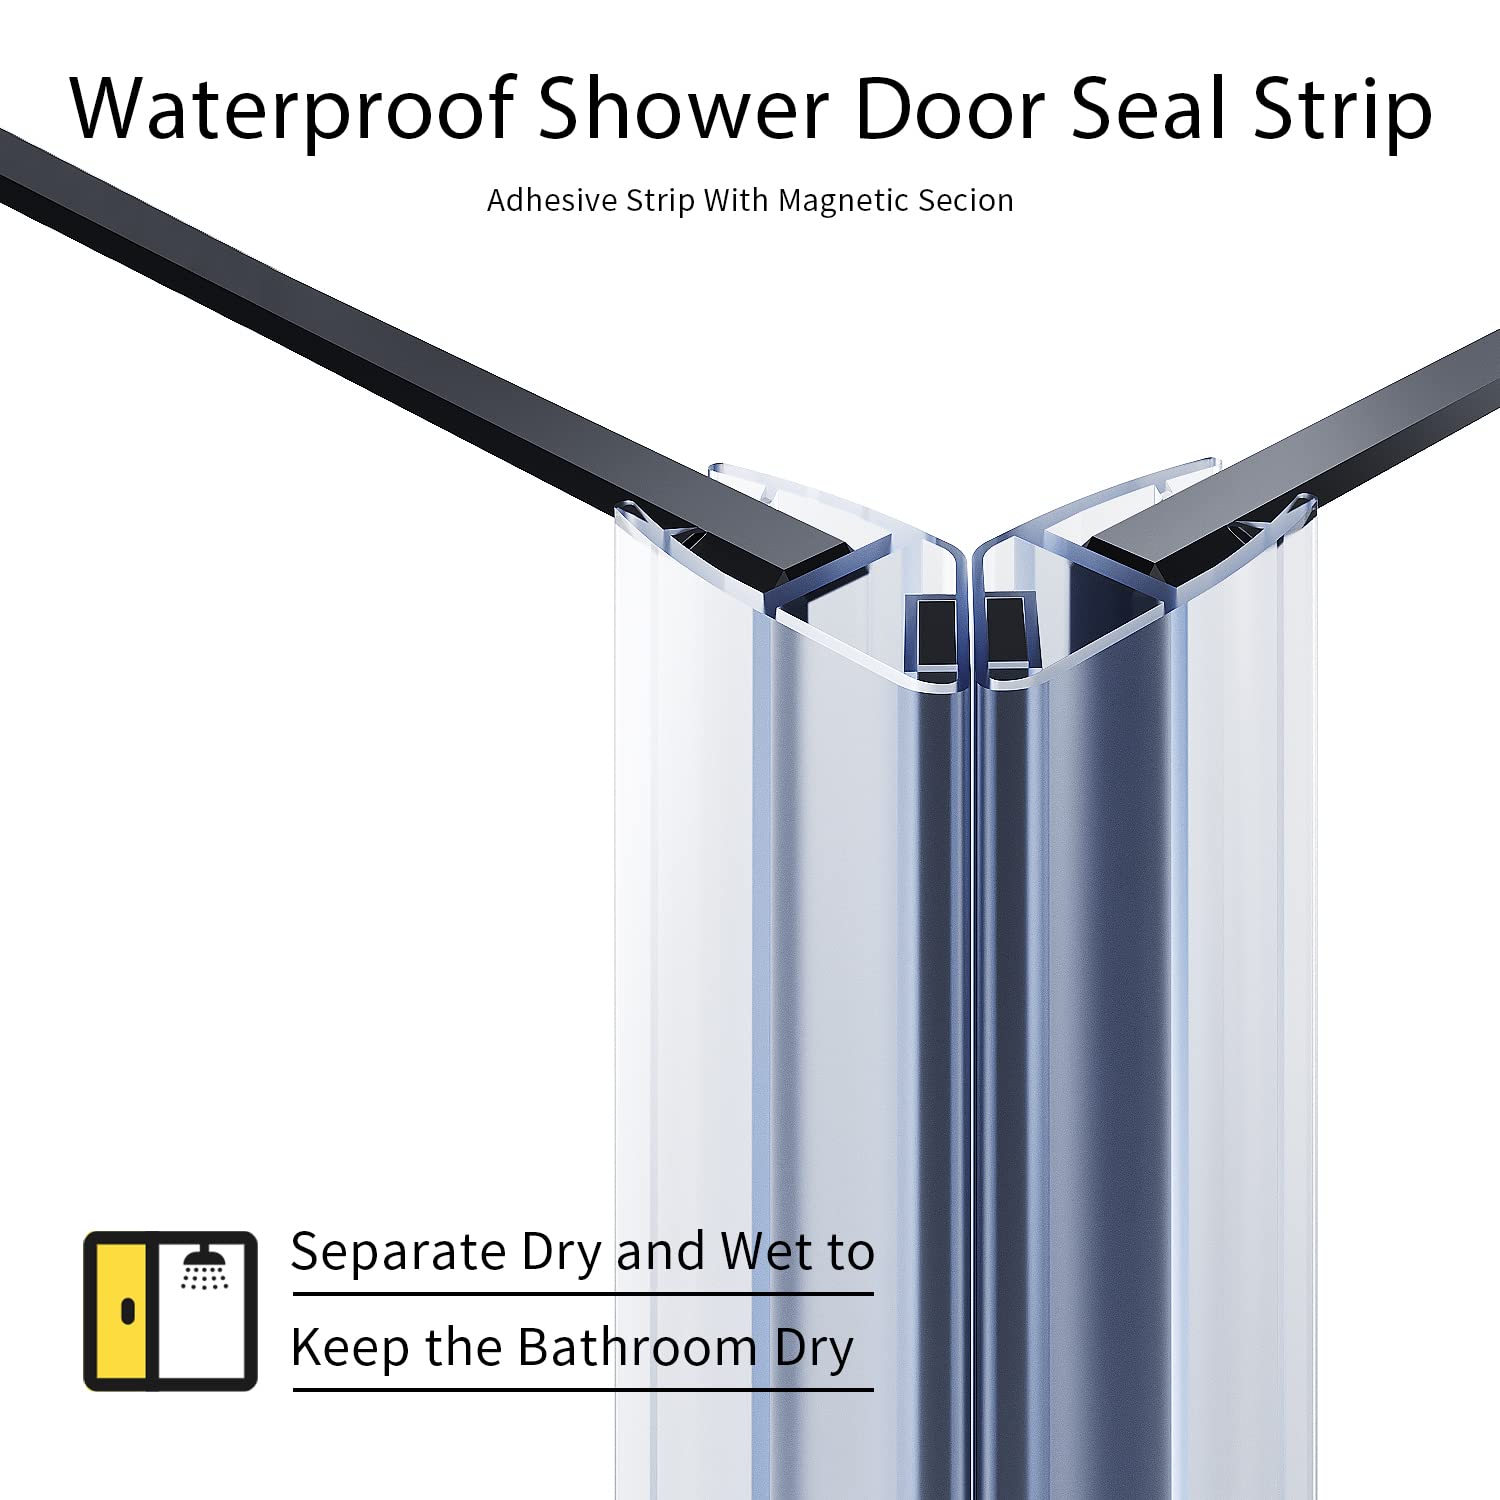 waterproof shower door seal strip